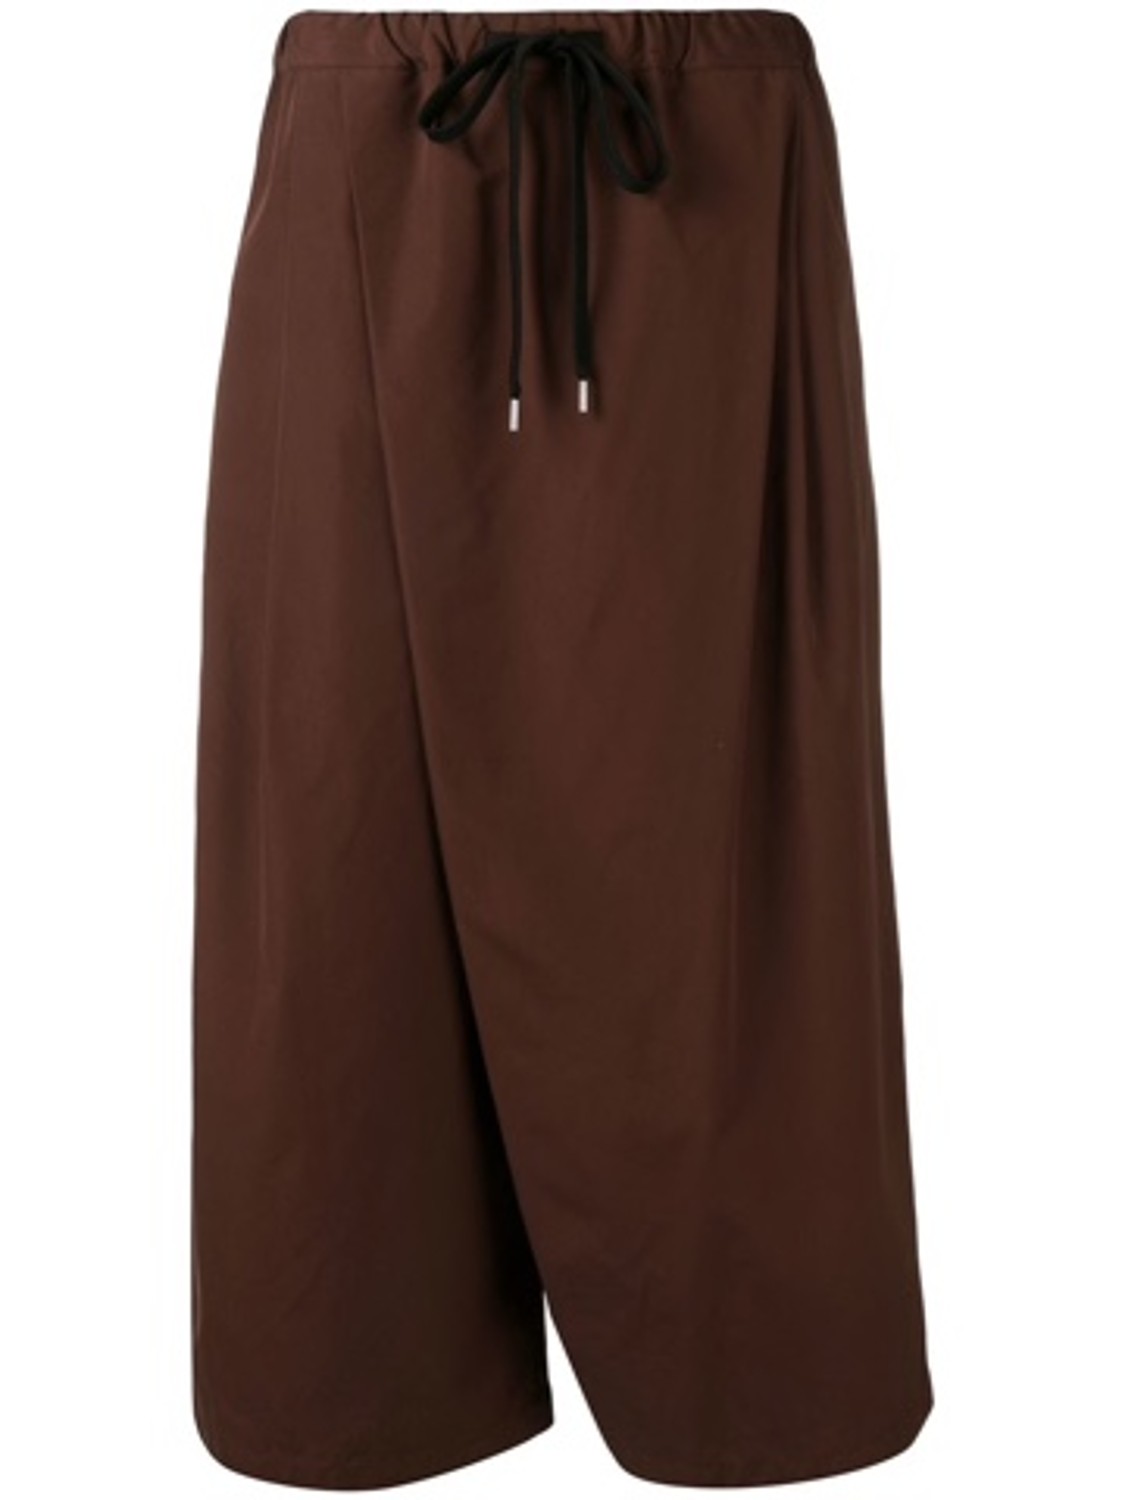 shop Marni  Pantaloni: Pantalone Marni, modello ampio, asimmetrico, coulisse in vita, vita alta, tasche laterali.

Composizione: 100% cotone. number 1405